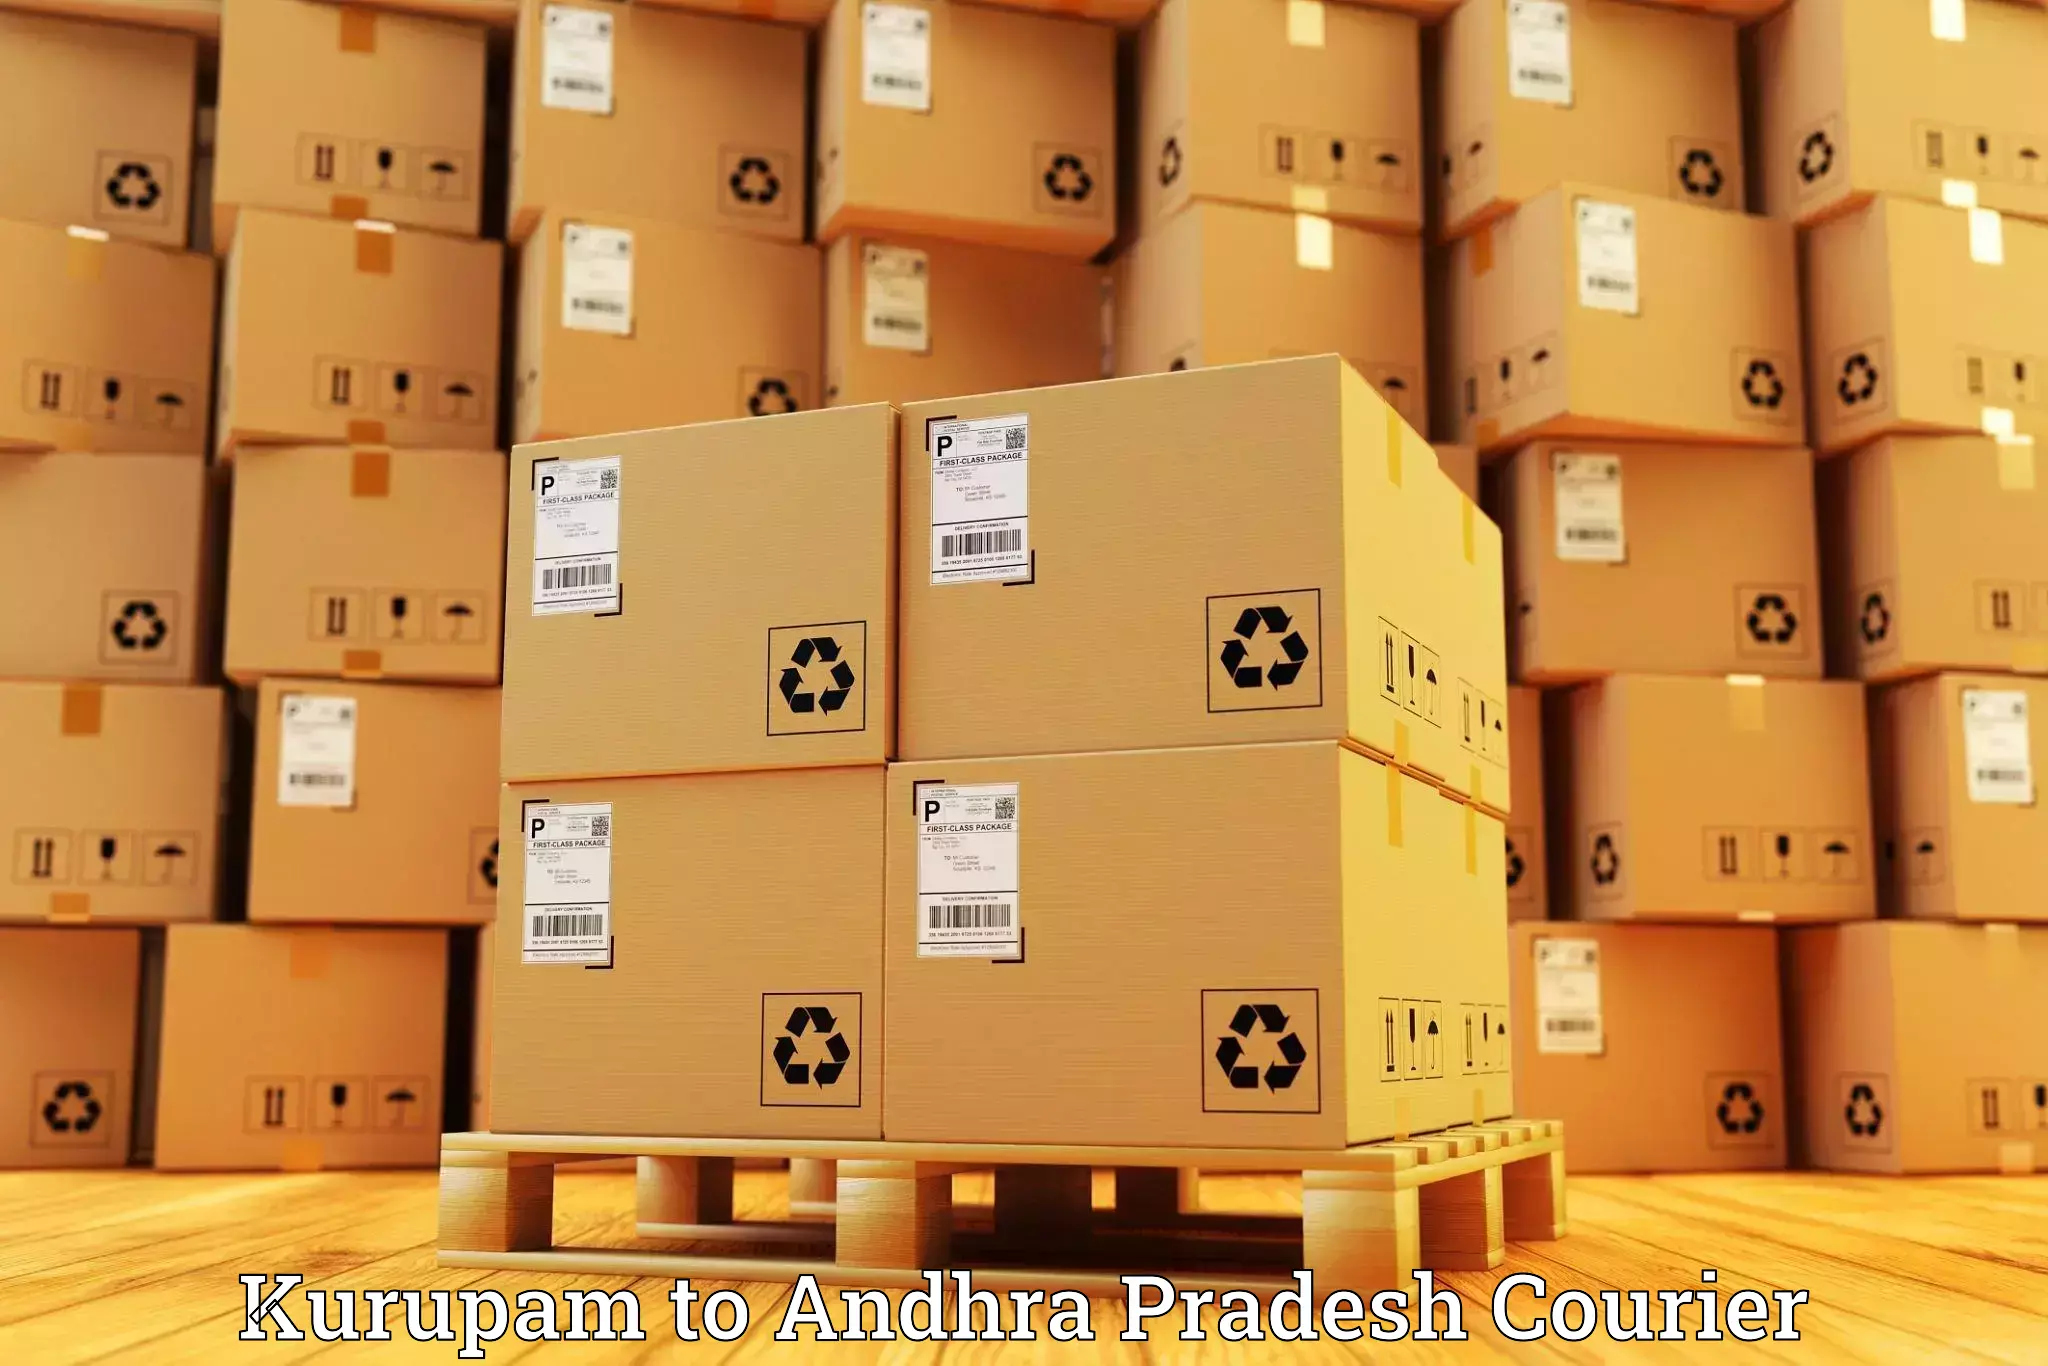 Global shipping solutions Kurupam to Madakasira